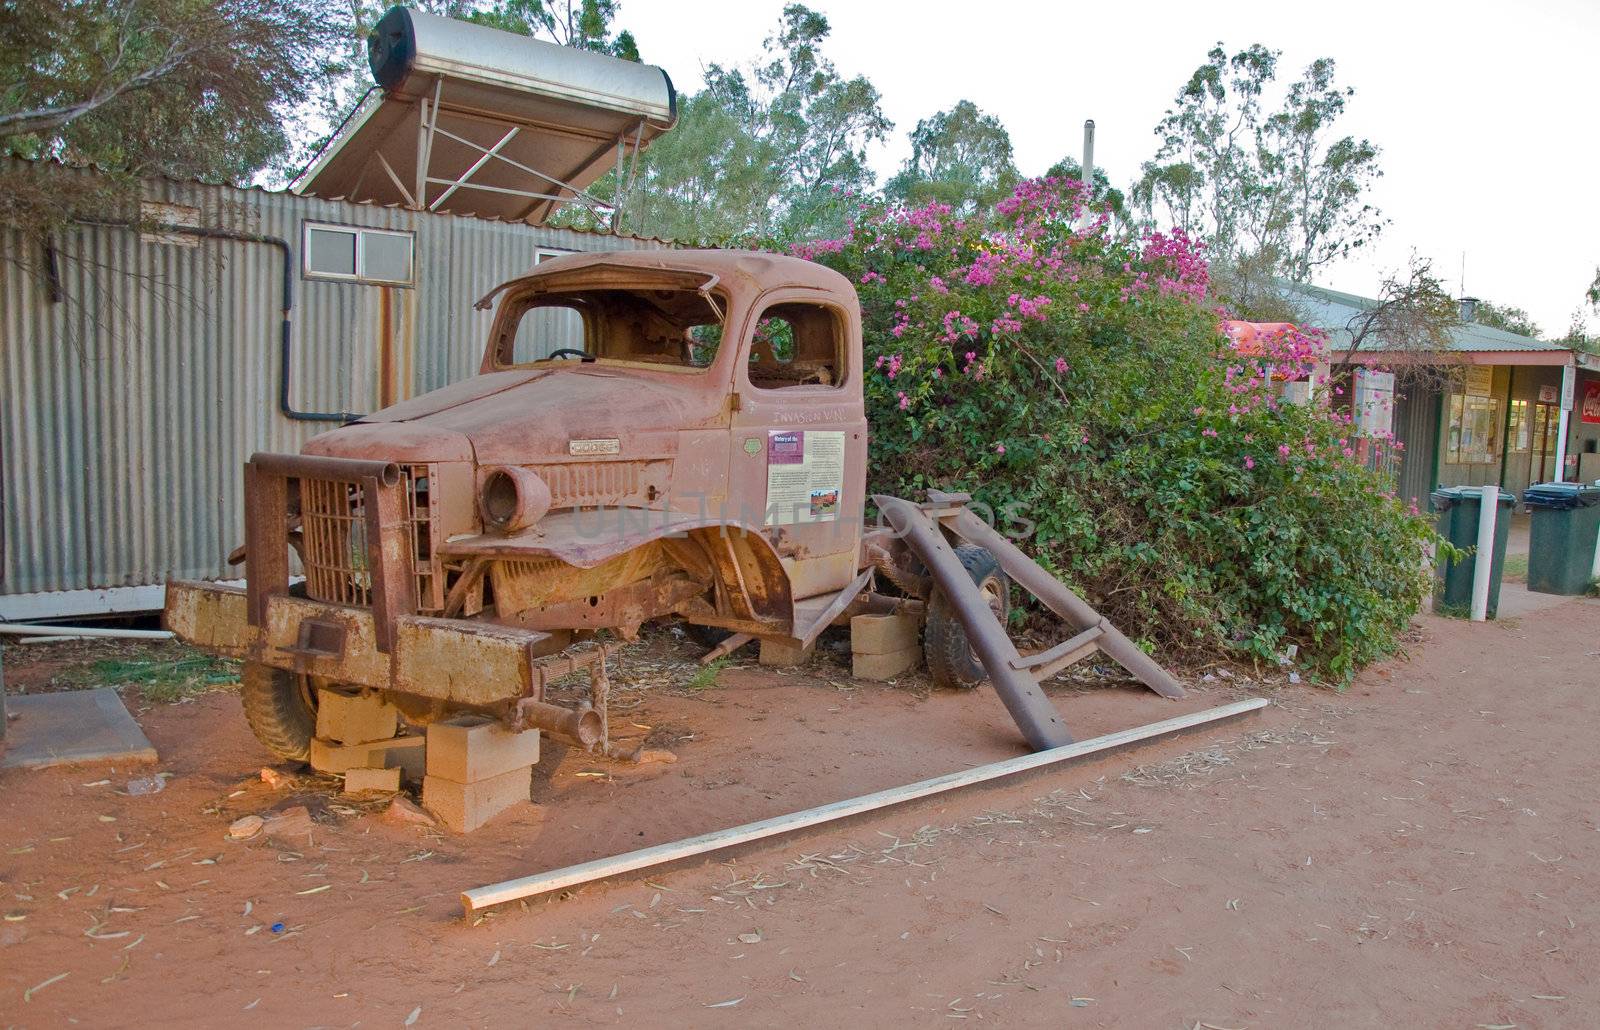 wreck truck in a australian farm, outback